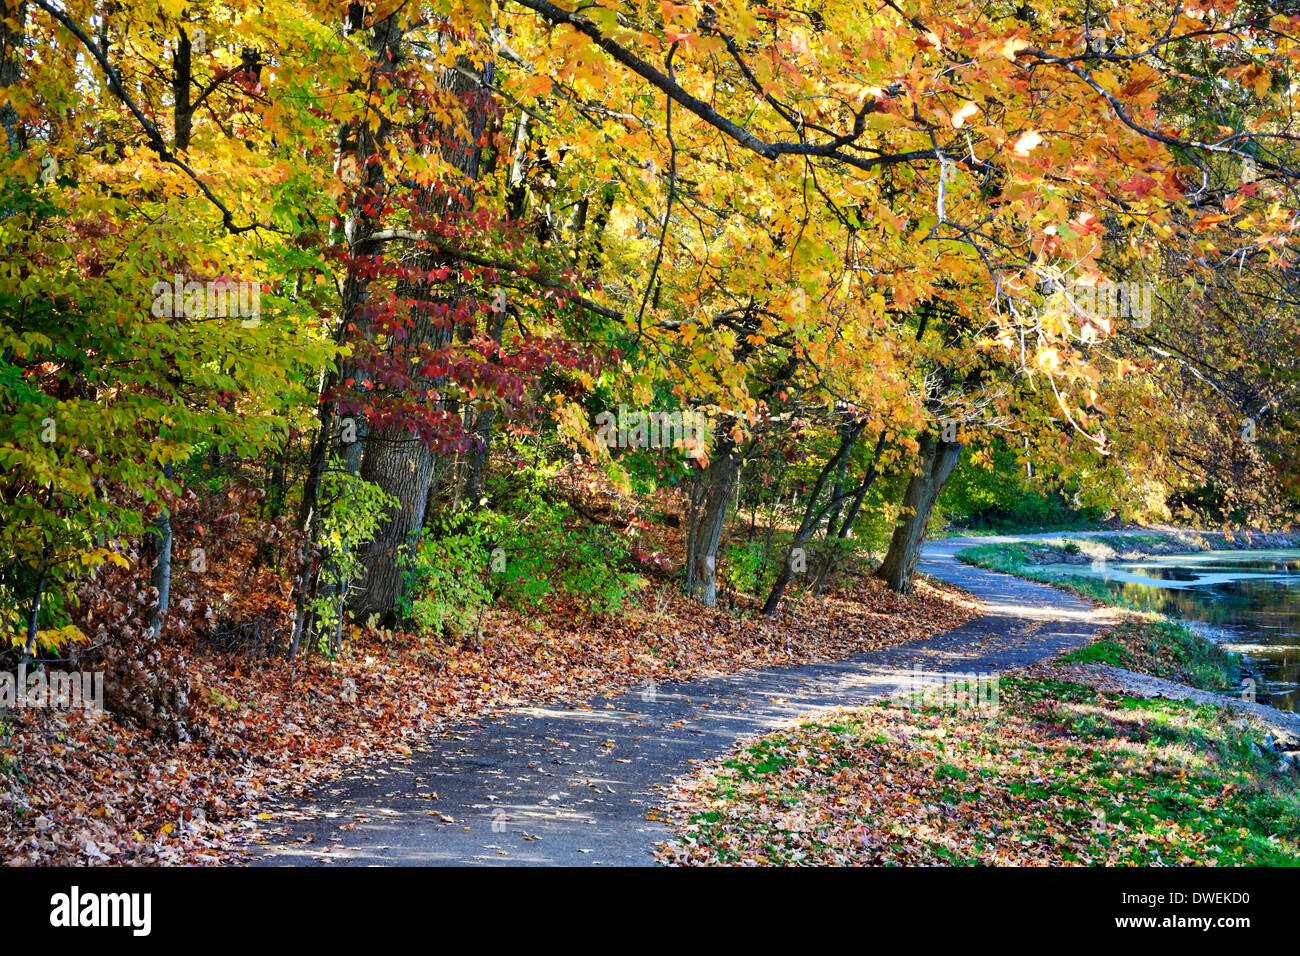 Un sentier pédestre le long d'un lac sur une journée ensoleillée au milieu de l'éclat des couleurs de l'automne, Sharon Woods, le sud-ouest de l'Ohio, USA Banque D'Images